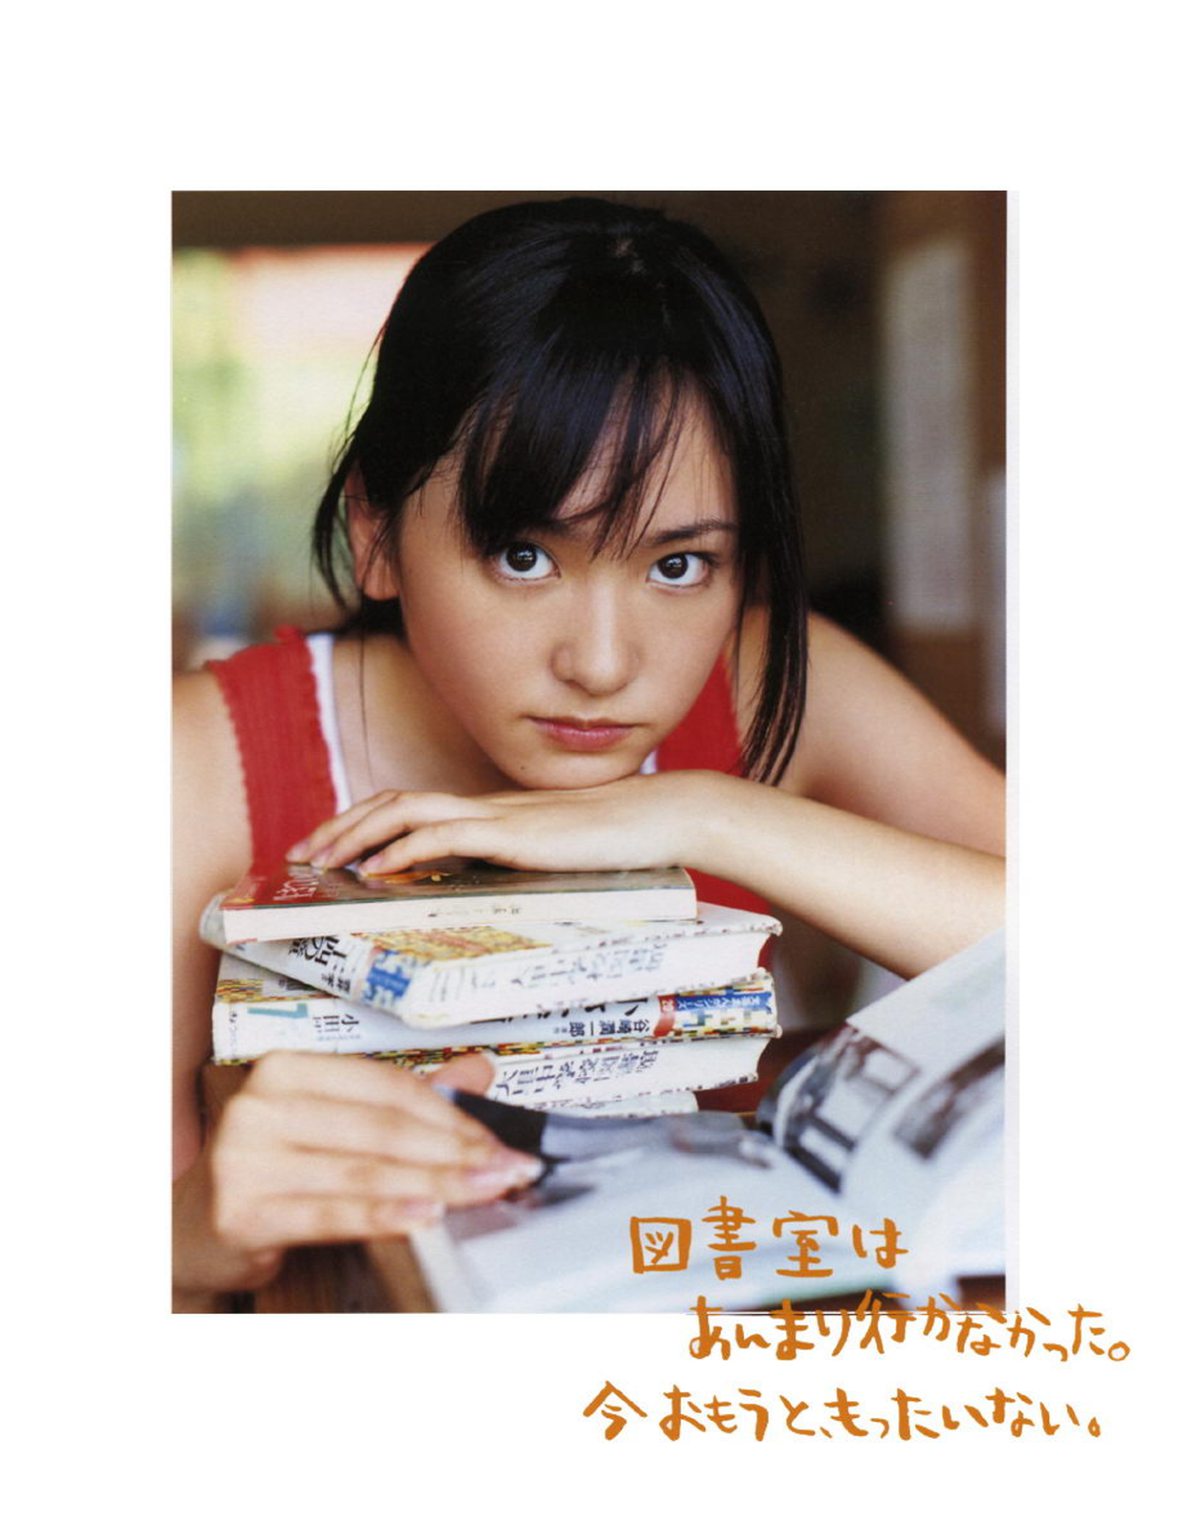 Photobook Yui Aragaki 新垣結衣 Chura Chura ちゅら ちゅら 2006 03 03 0076 2063545241.jpg